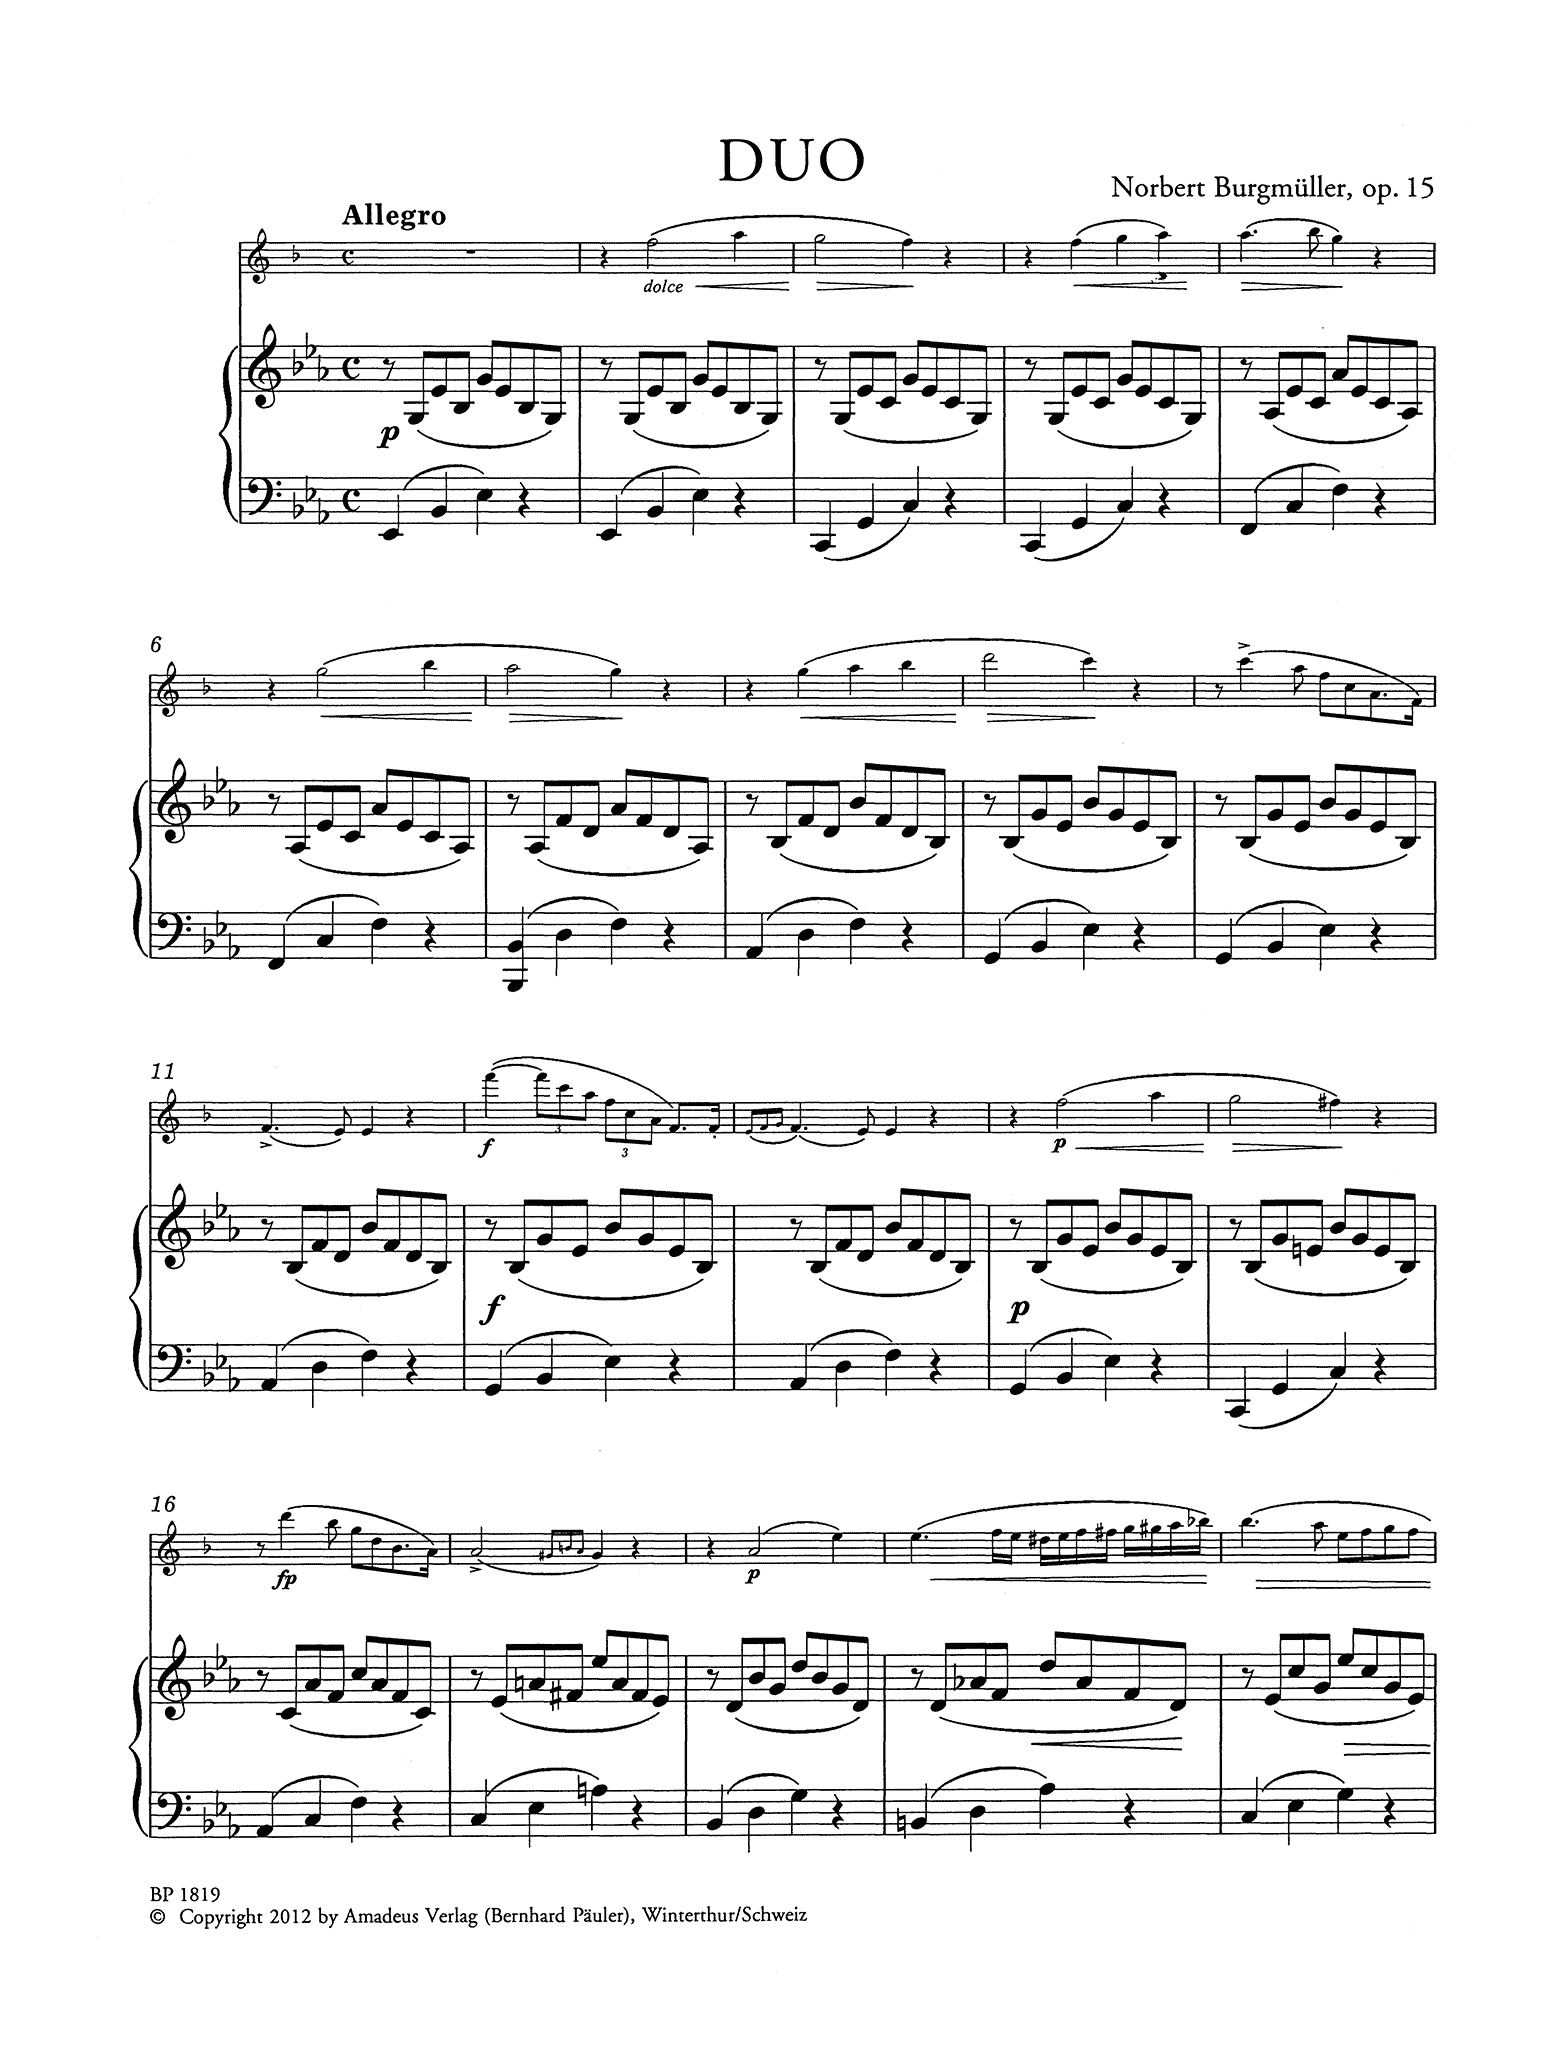 Burgmüller Duo Op. 15 - Movement 1